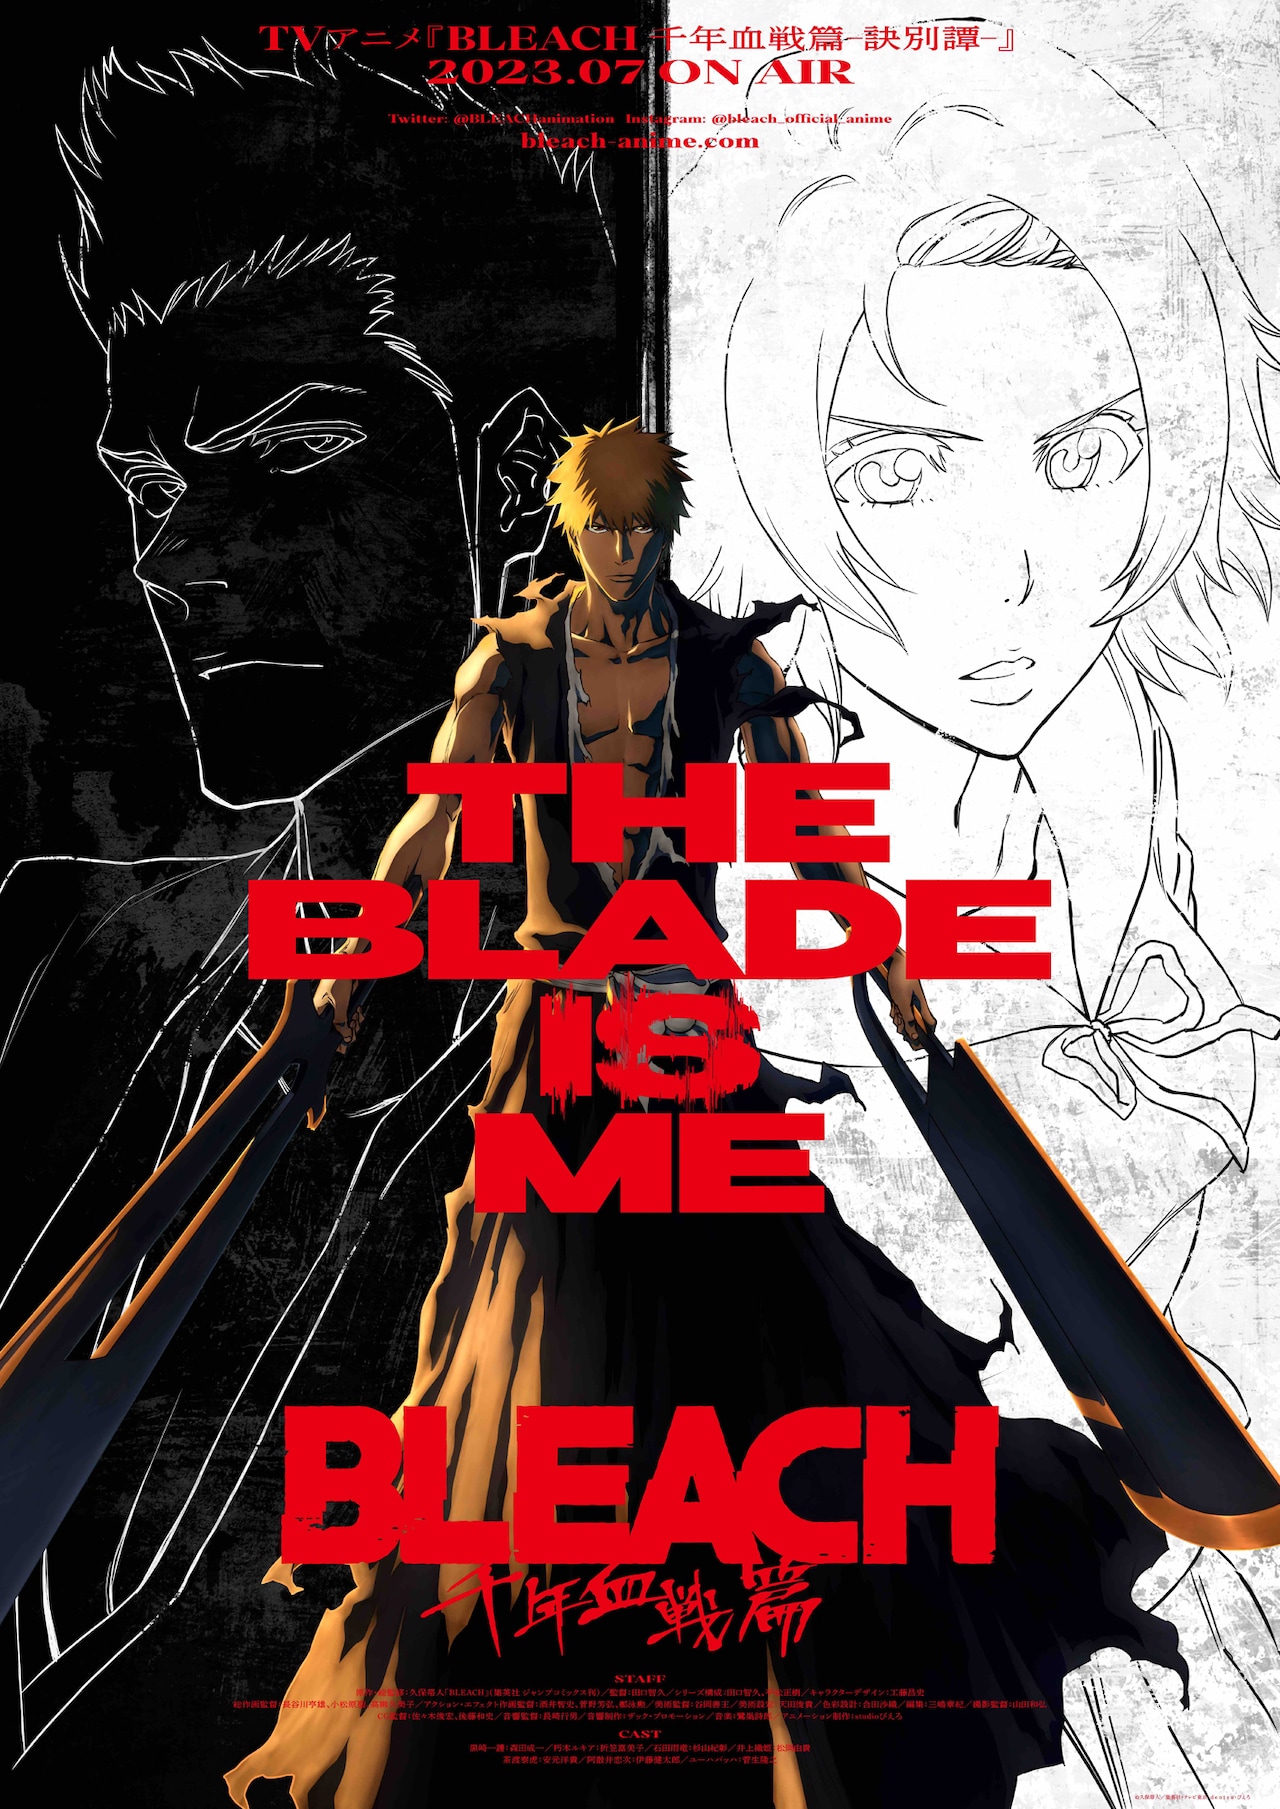 Bleach: depois de oito anos, novo anime é confirmado para 2021 - TecMundo